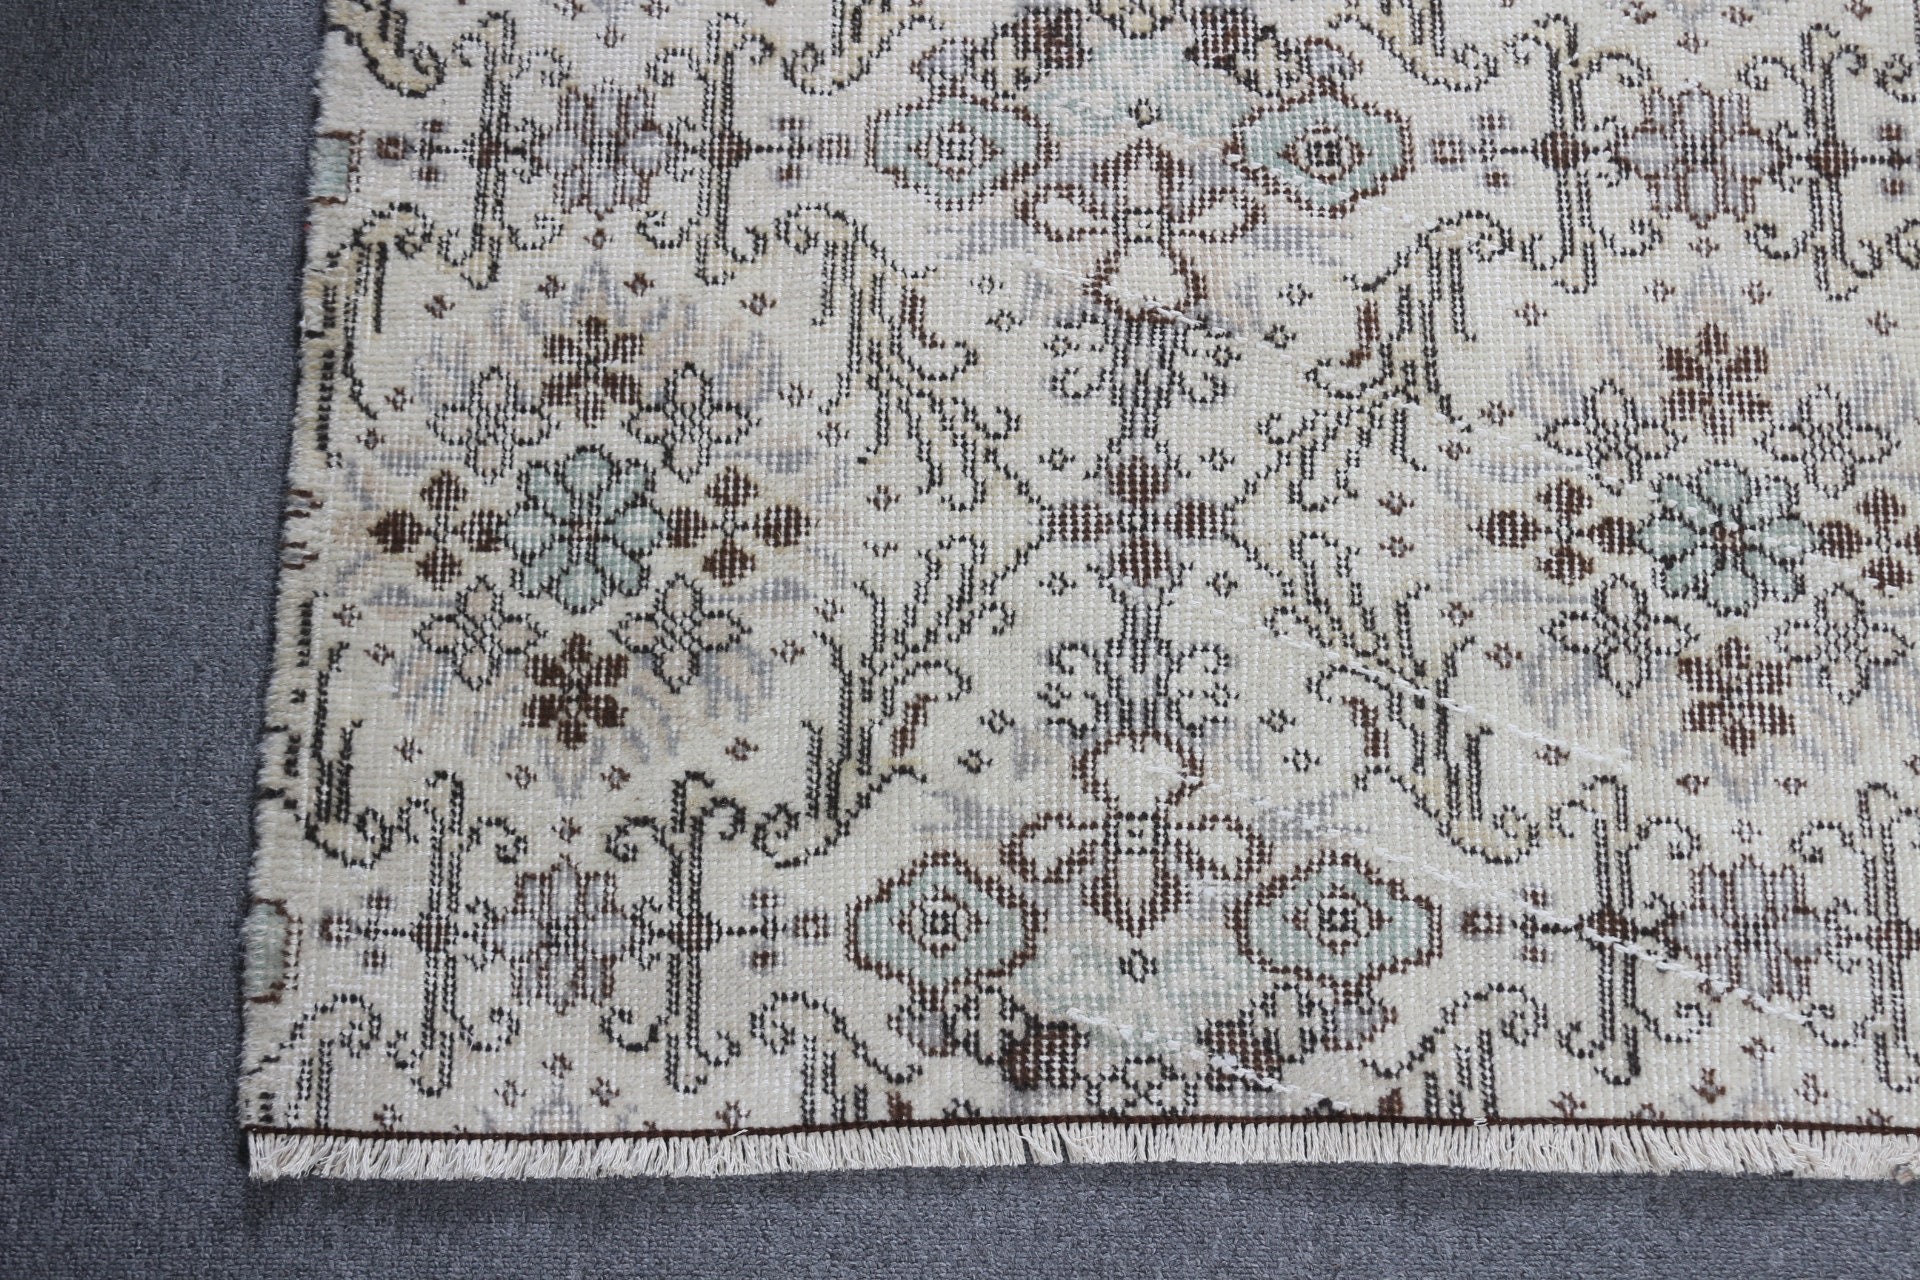 Anatolian Rug, Vintage Rugs, Pastel Rug, Indoor Rug, Rugs for Living Room, 4x6.9 ft Area Rugs, Beige Floor Rug, Wool Rug, Turkish Rug